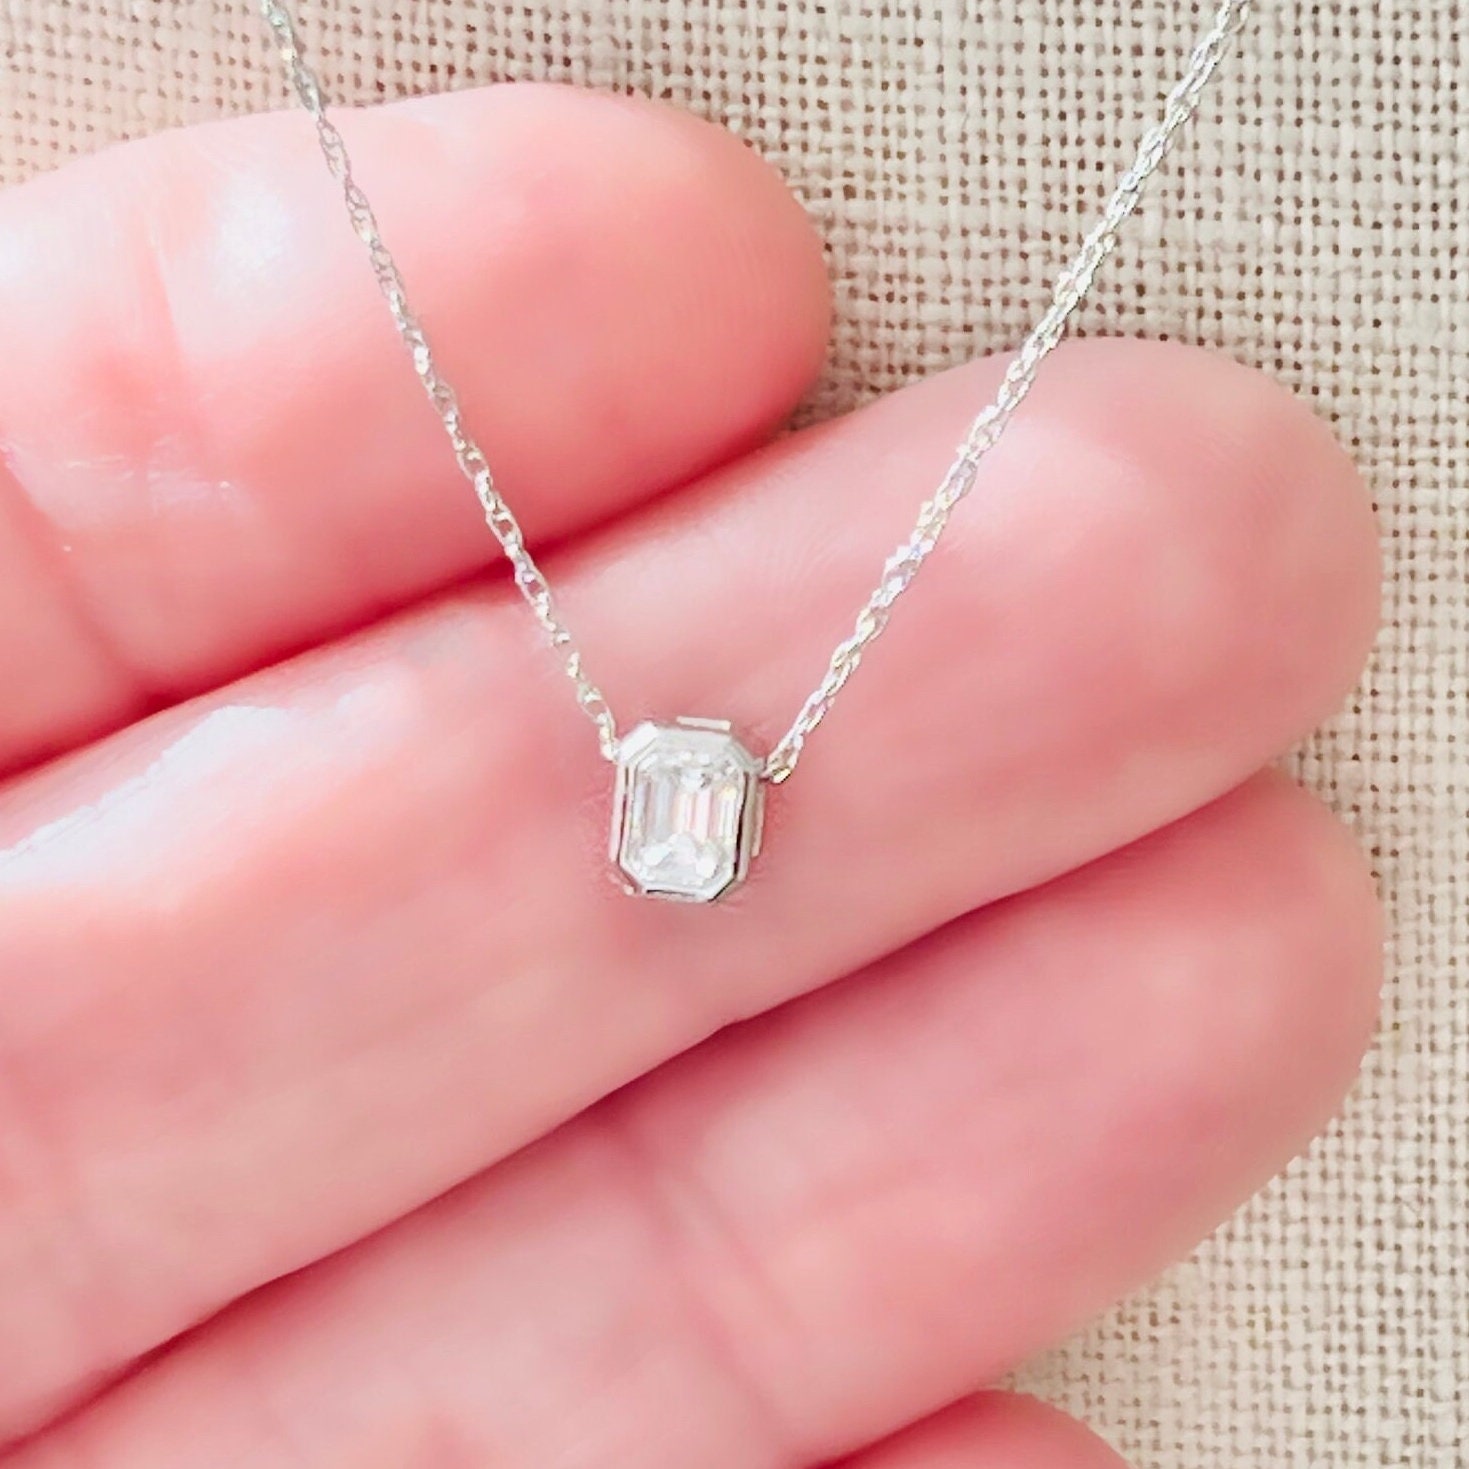 Diamond Necklace / 14k White Gold Diamond Sliding Necklace / 